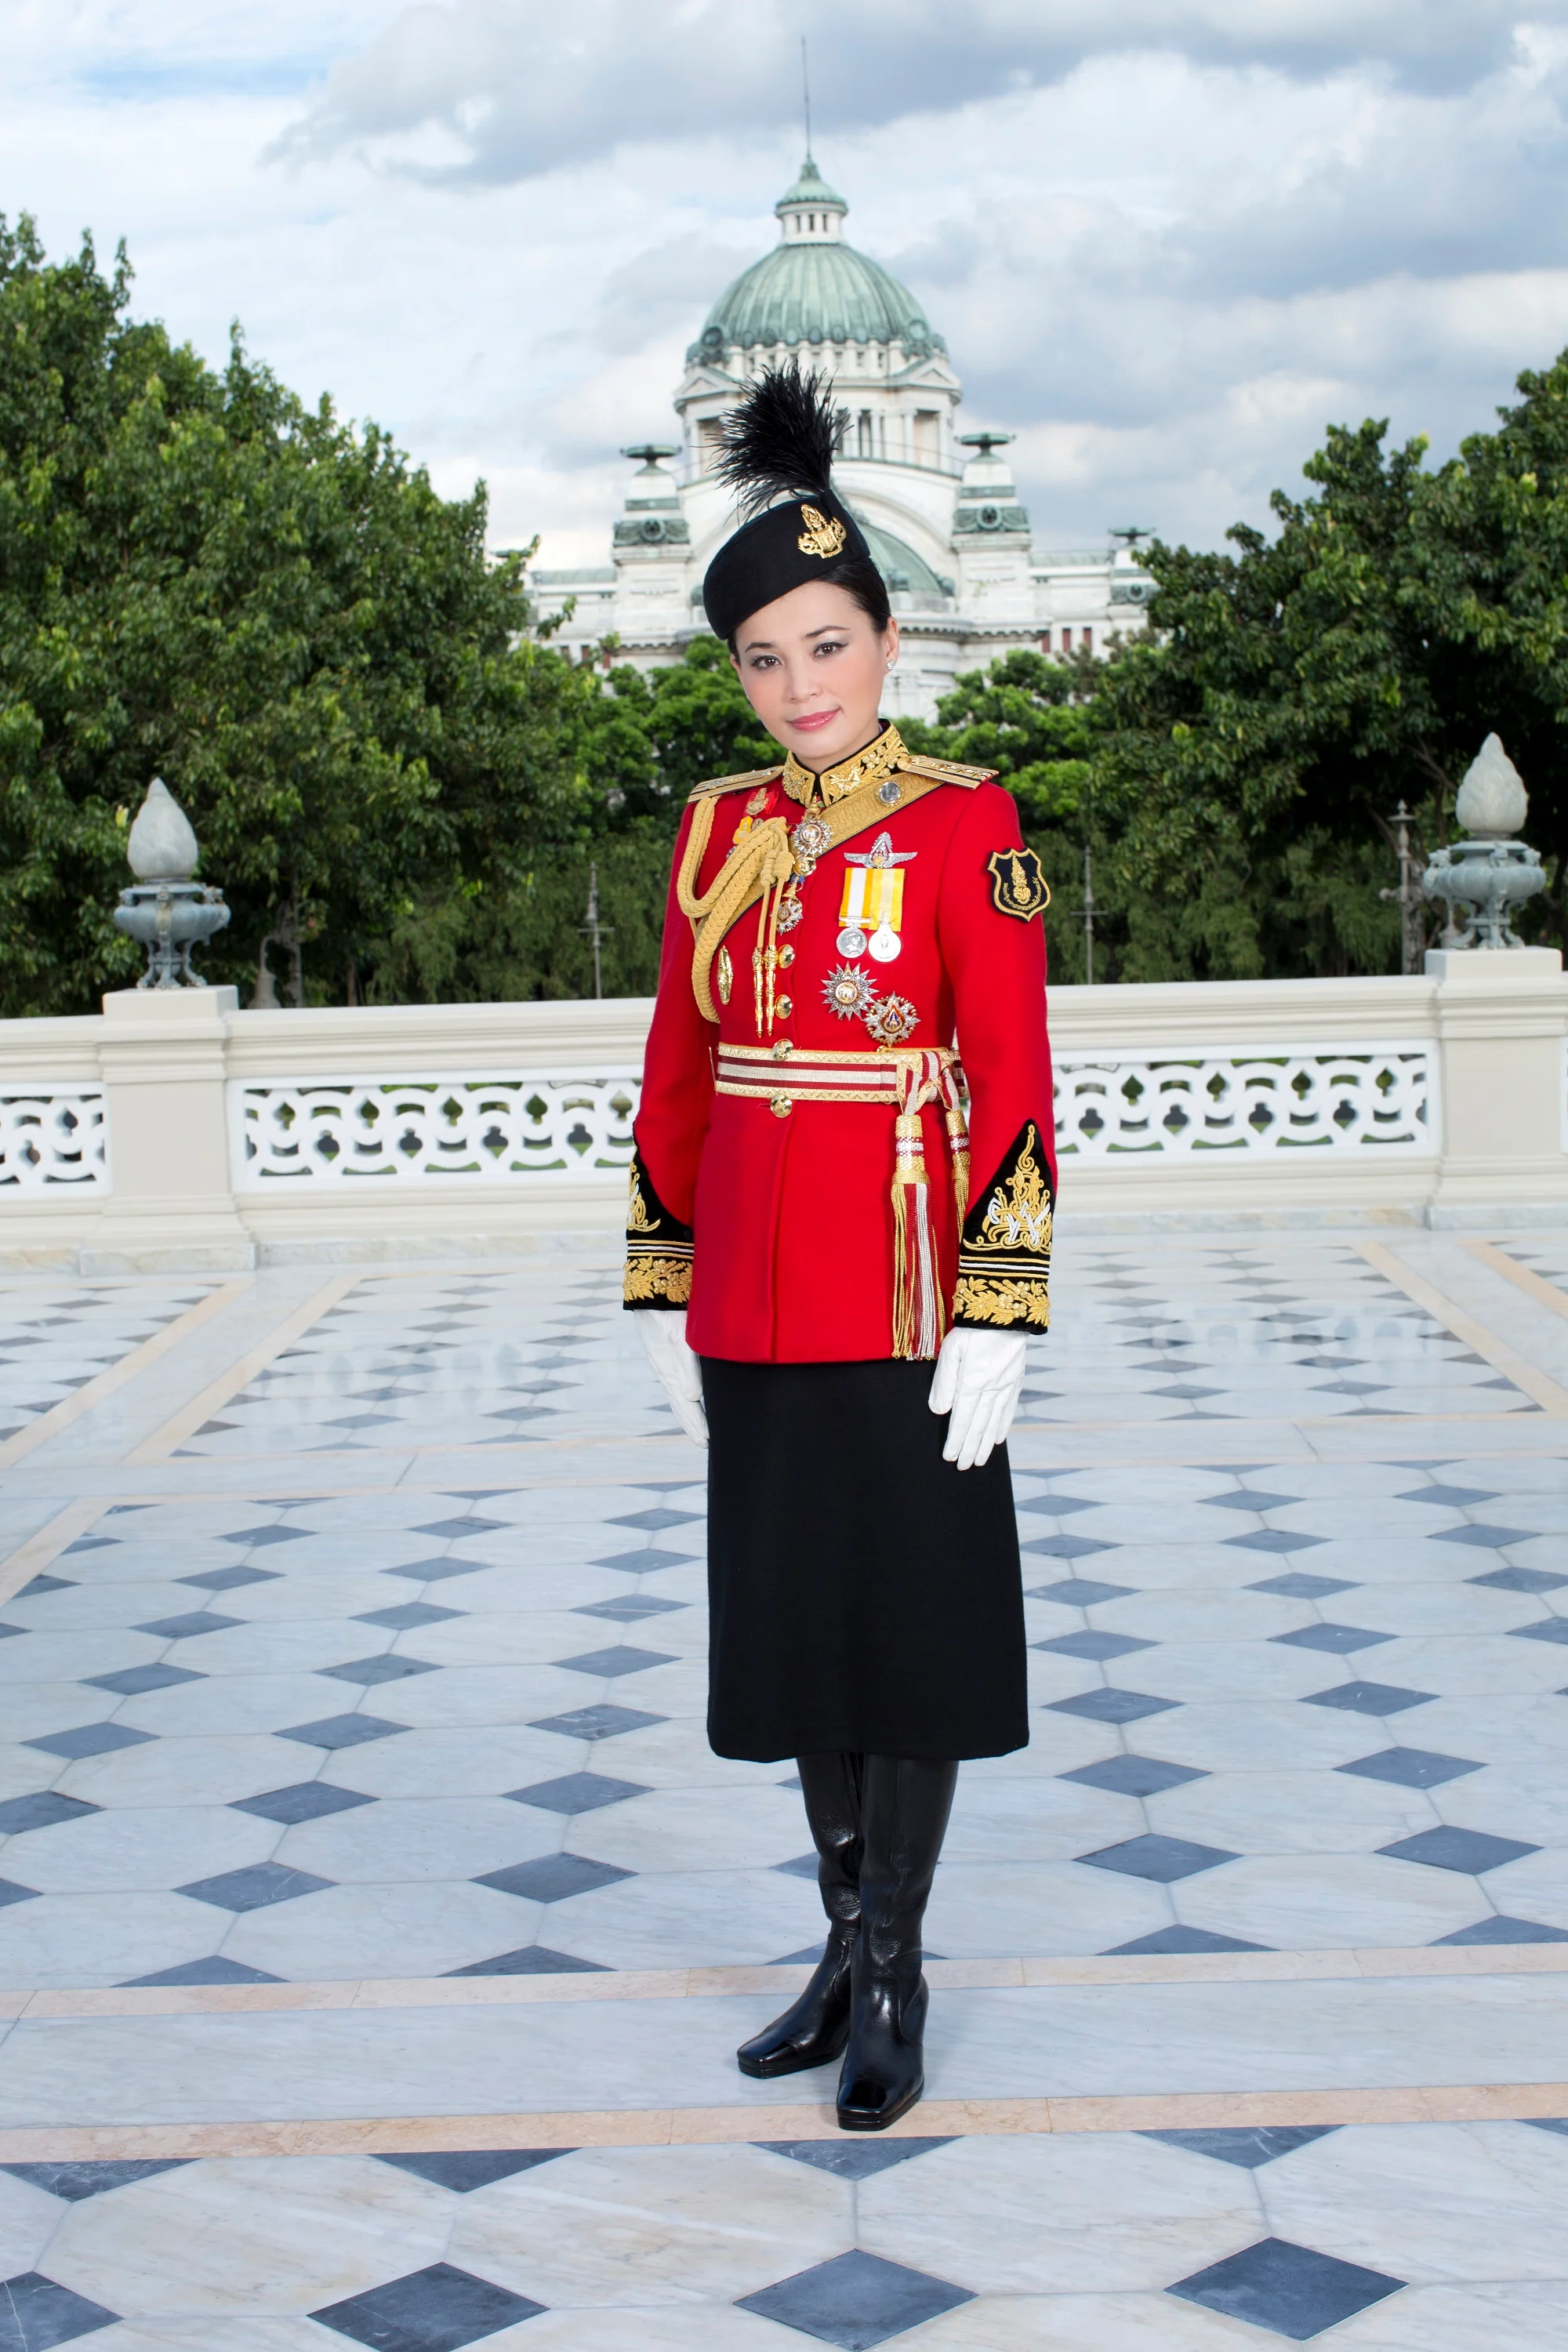 Появились первые официальные фото королевы Таиланда, и они не похожи на портрет Меган - фото 434521